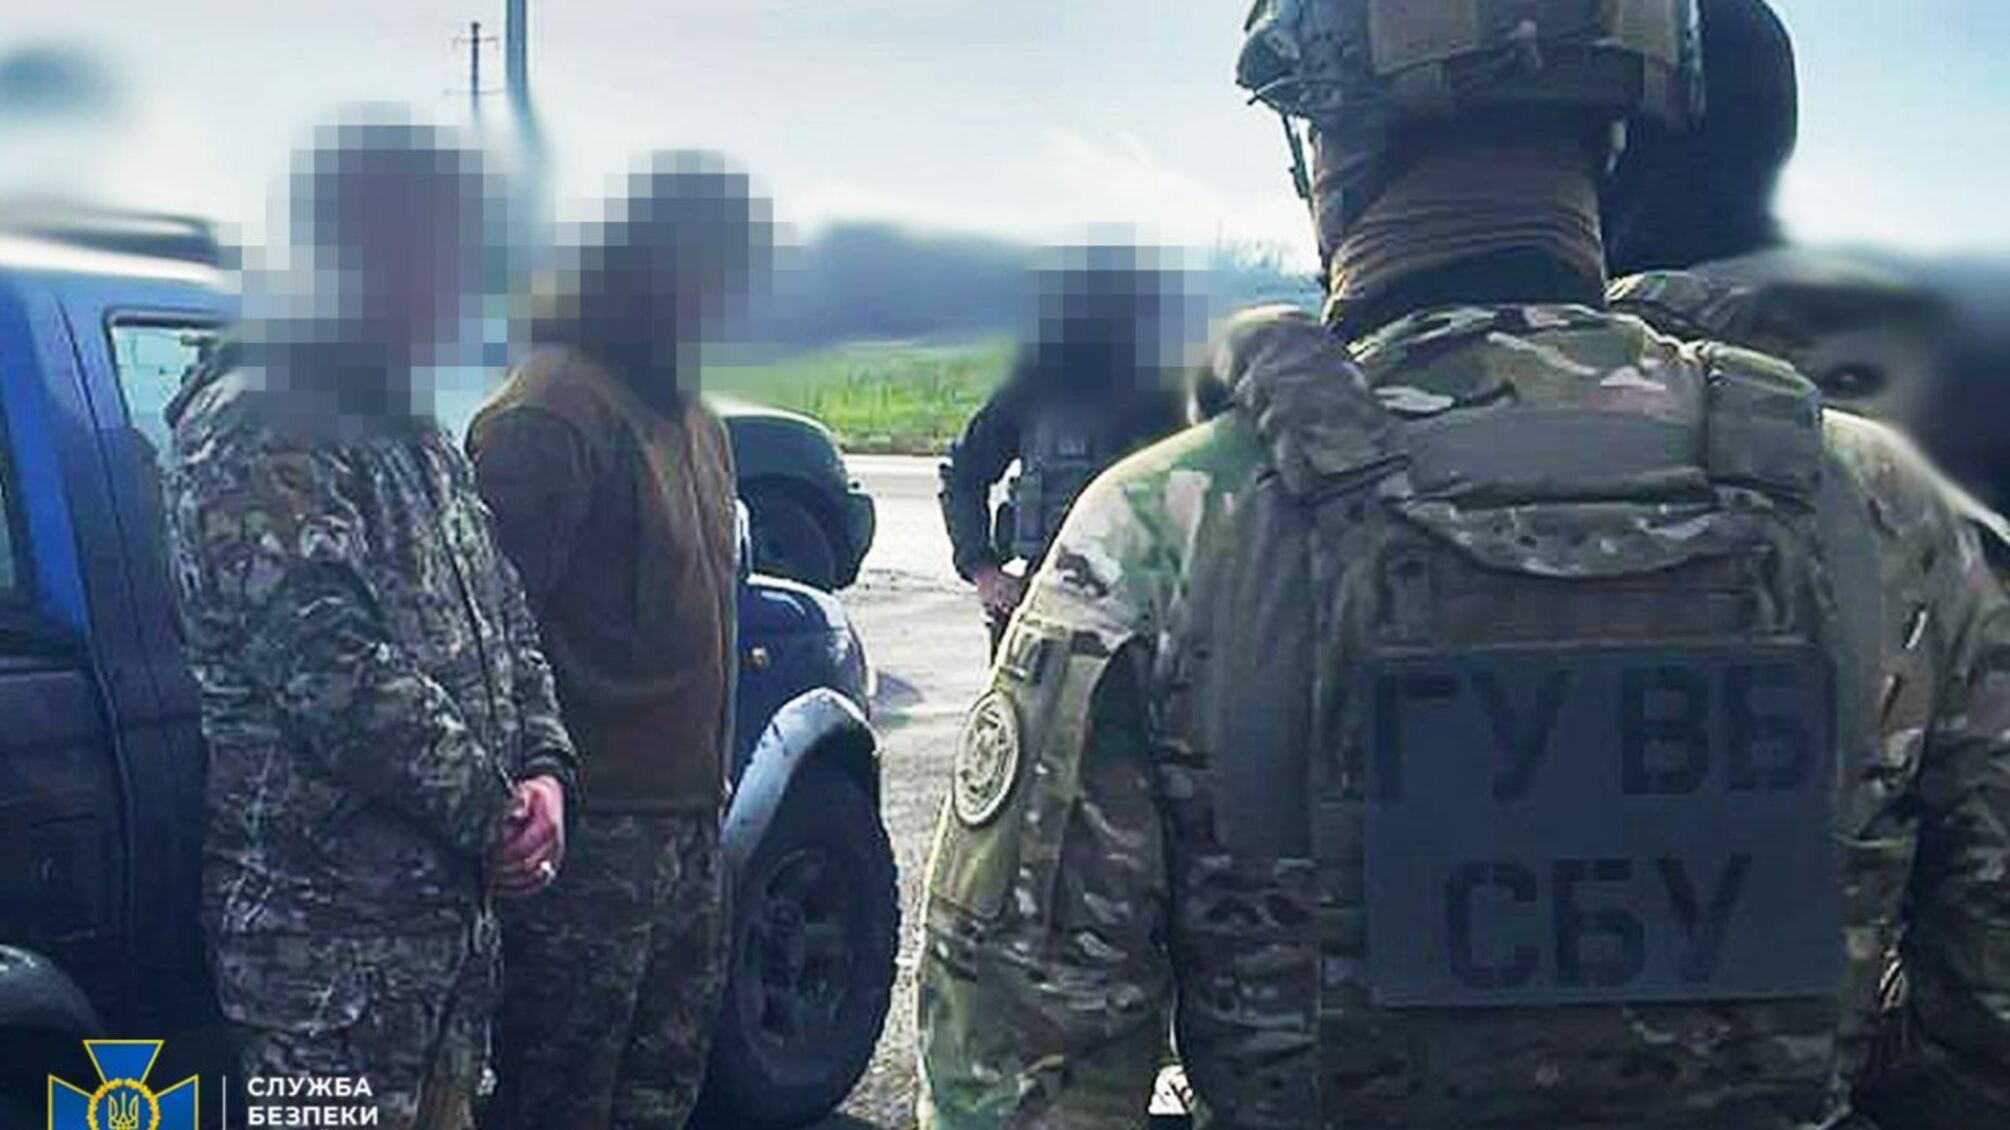 Хотели продать криминалитету 'трофейное' российское оружие: СБУ задержала в Донецкой области двух дельцов